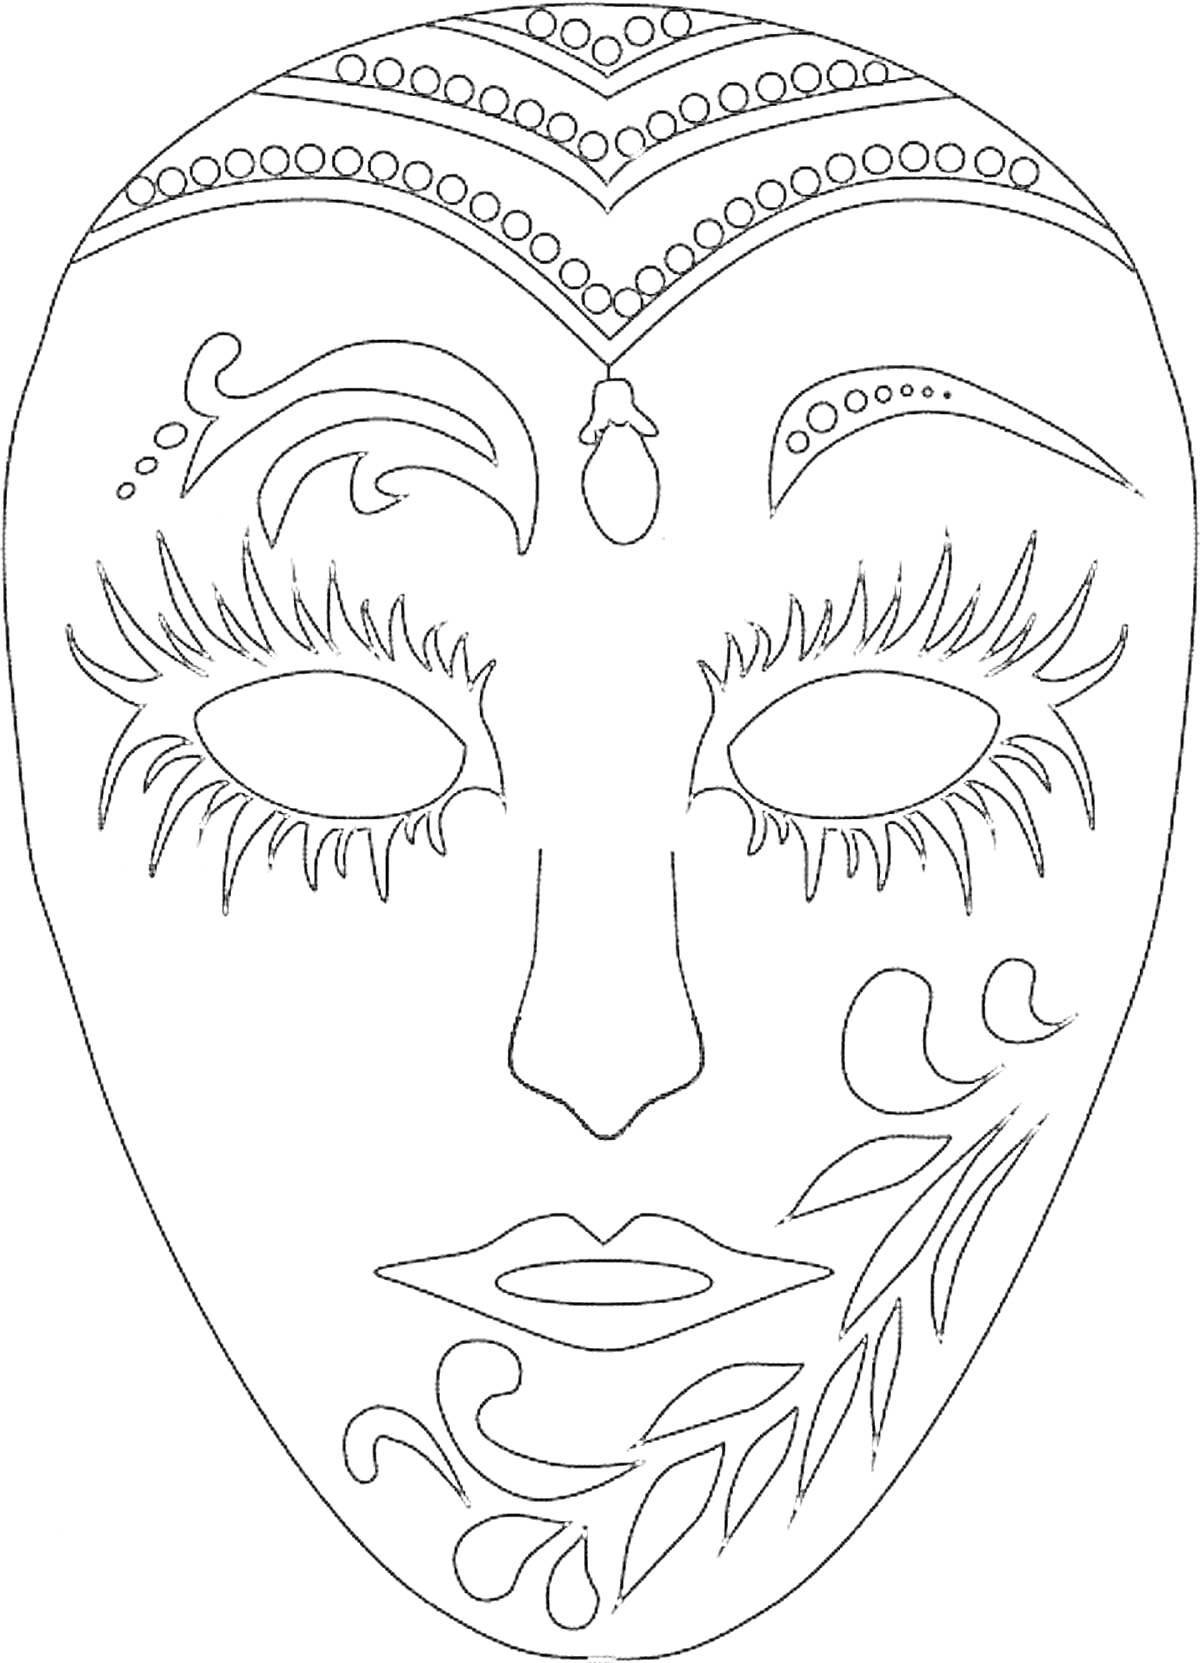 Раскраска Маска для лица с растительным орнаментом, декоративными узорами, линями и деталями на лбу, около глаз и на щеке